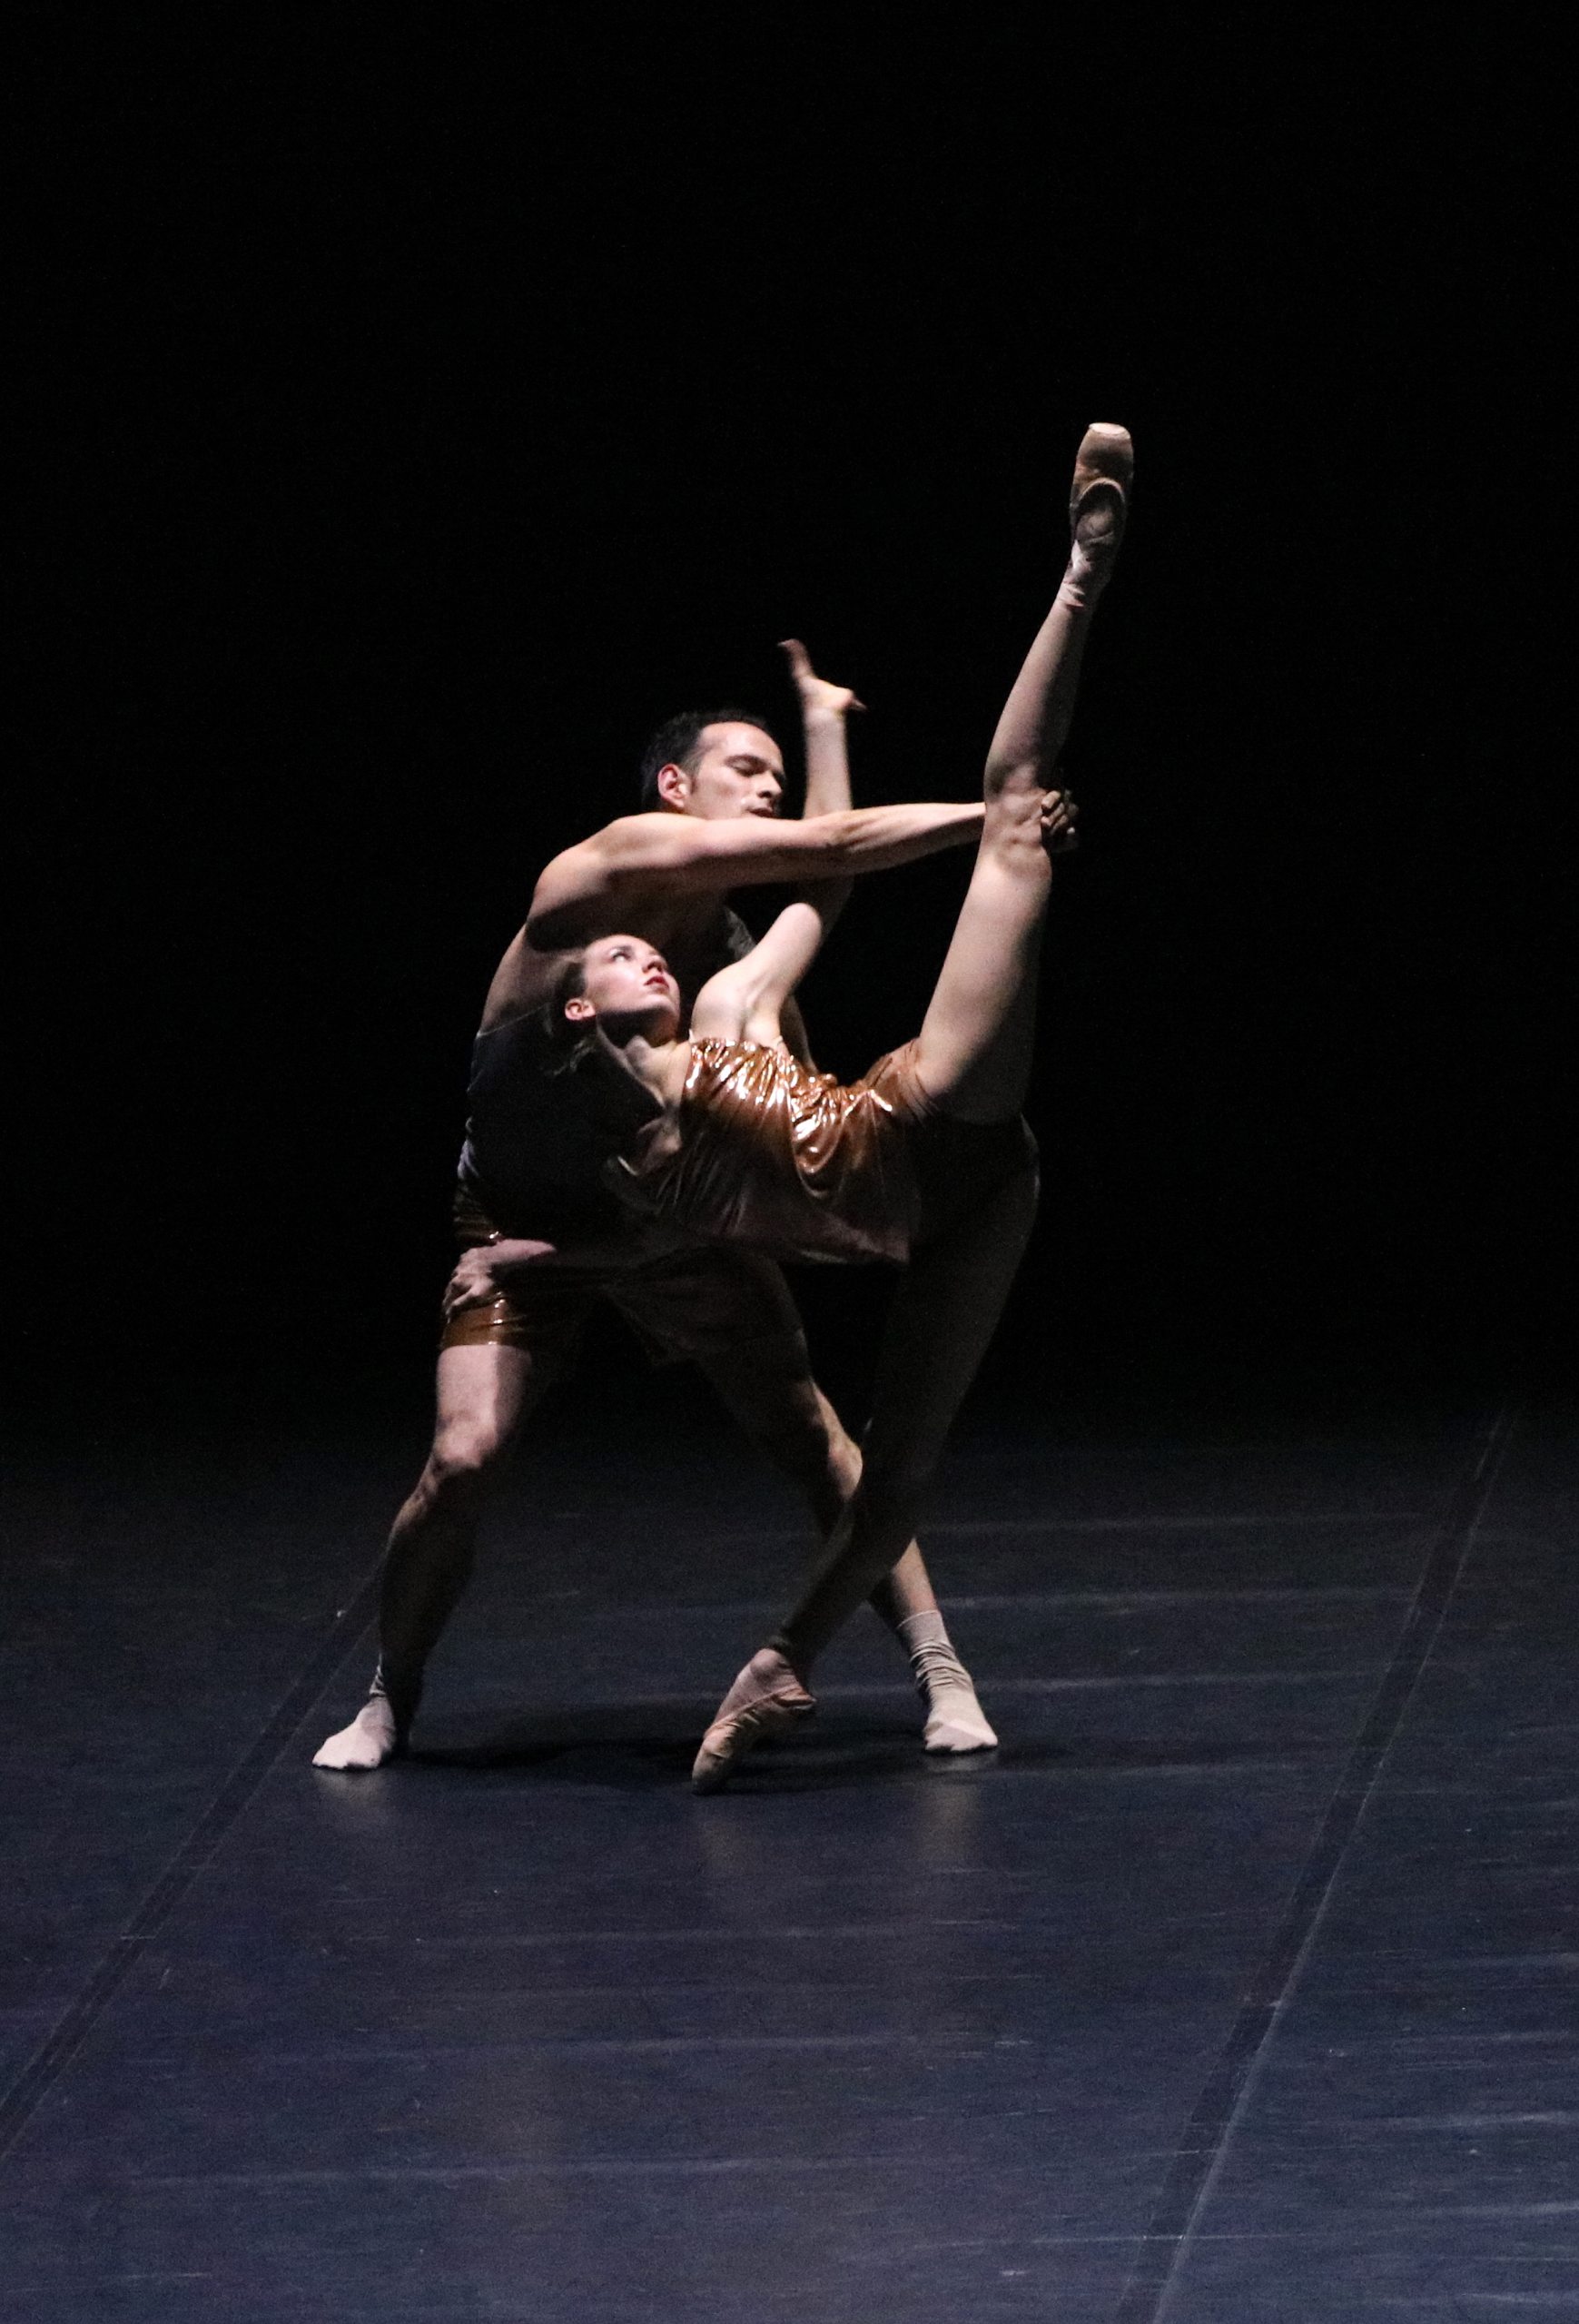 Zwei Balletttänzer tanzen ein Duett. Sie tragen goldene Kostüme und der Hintergrund ist dunkel.